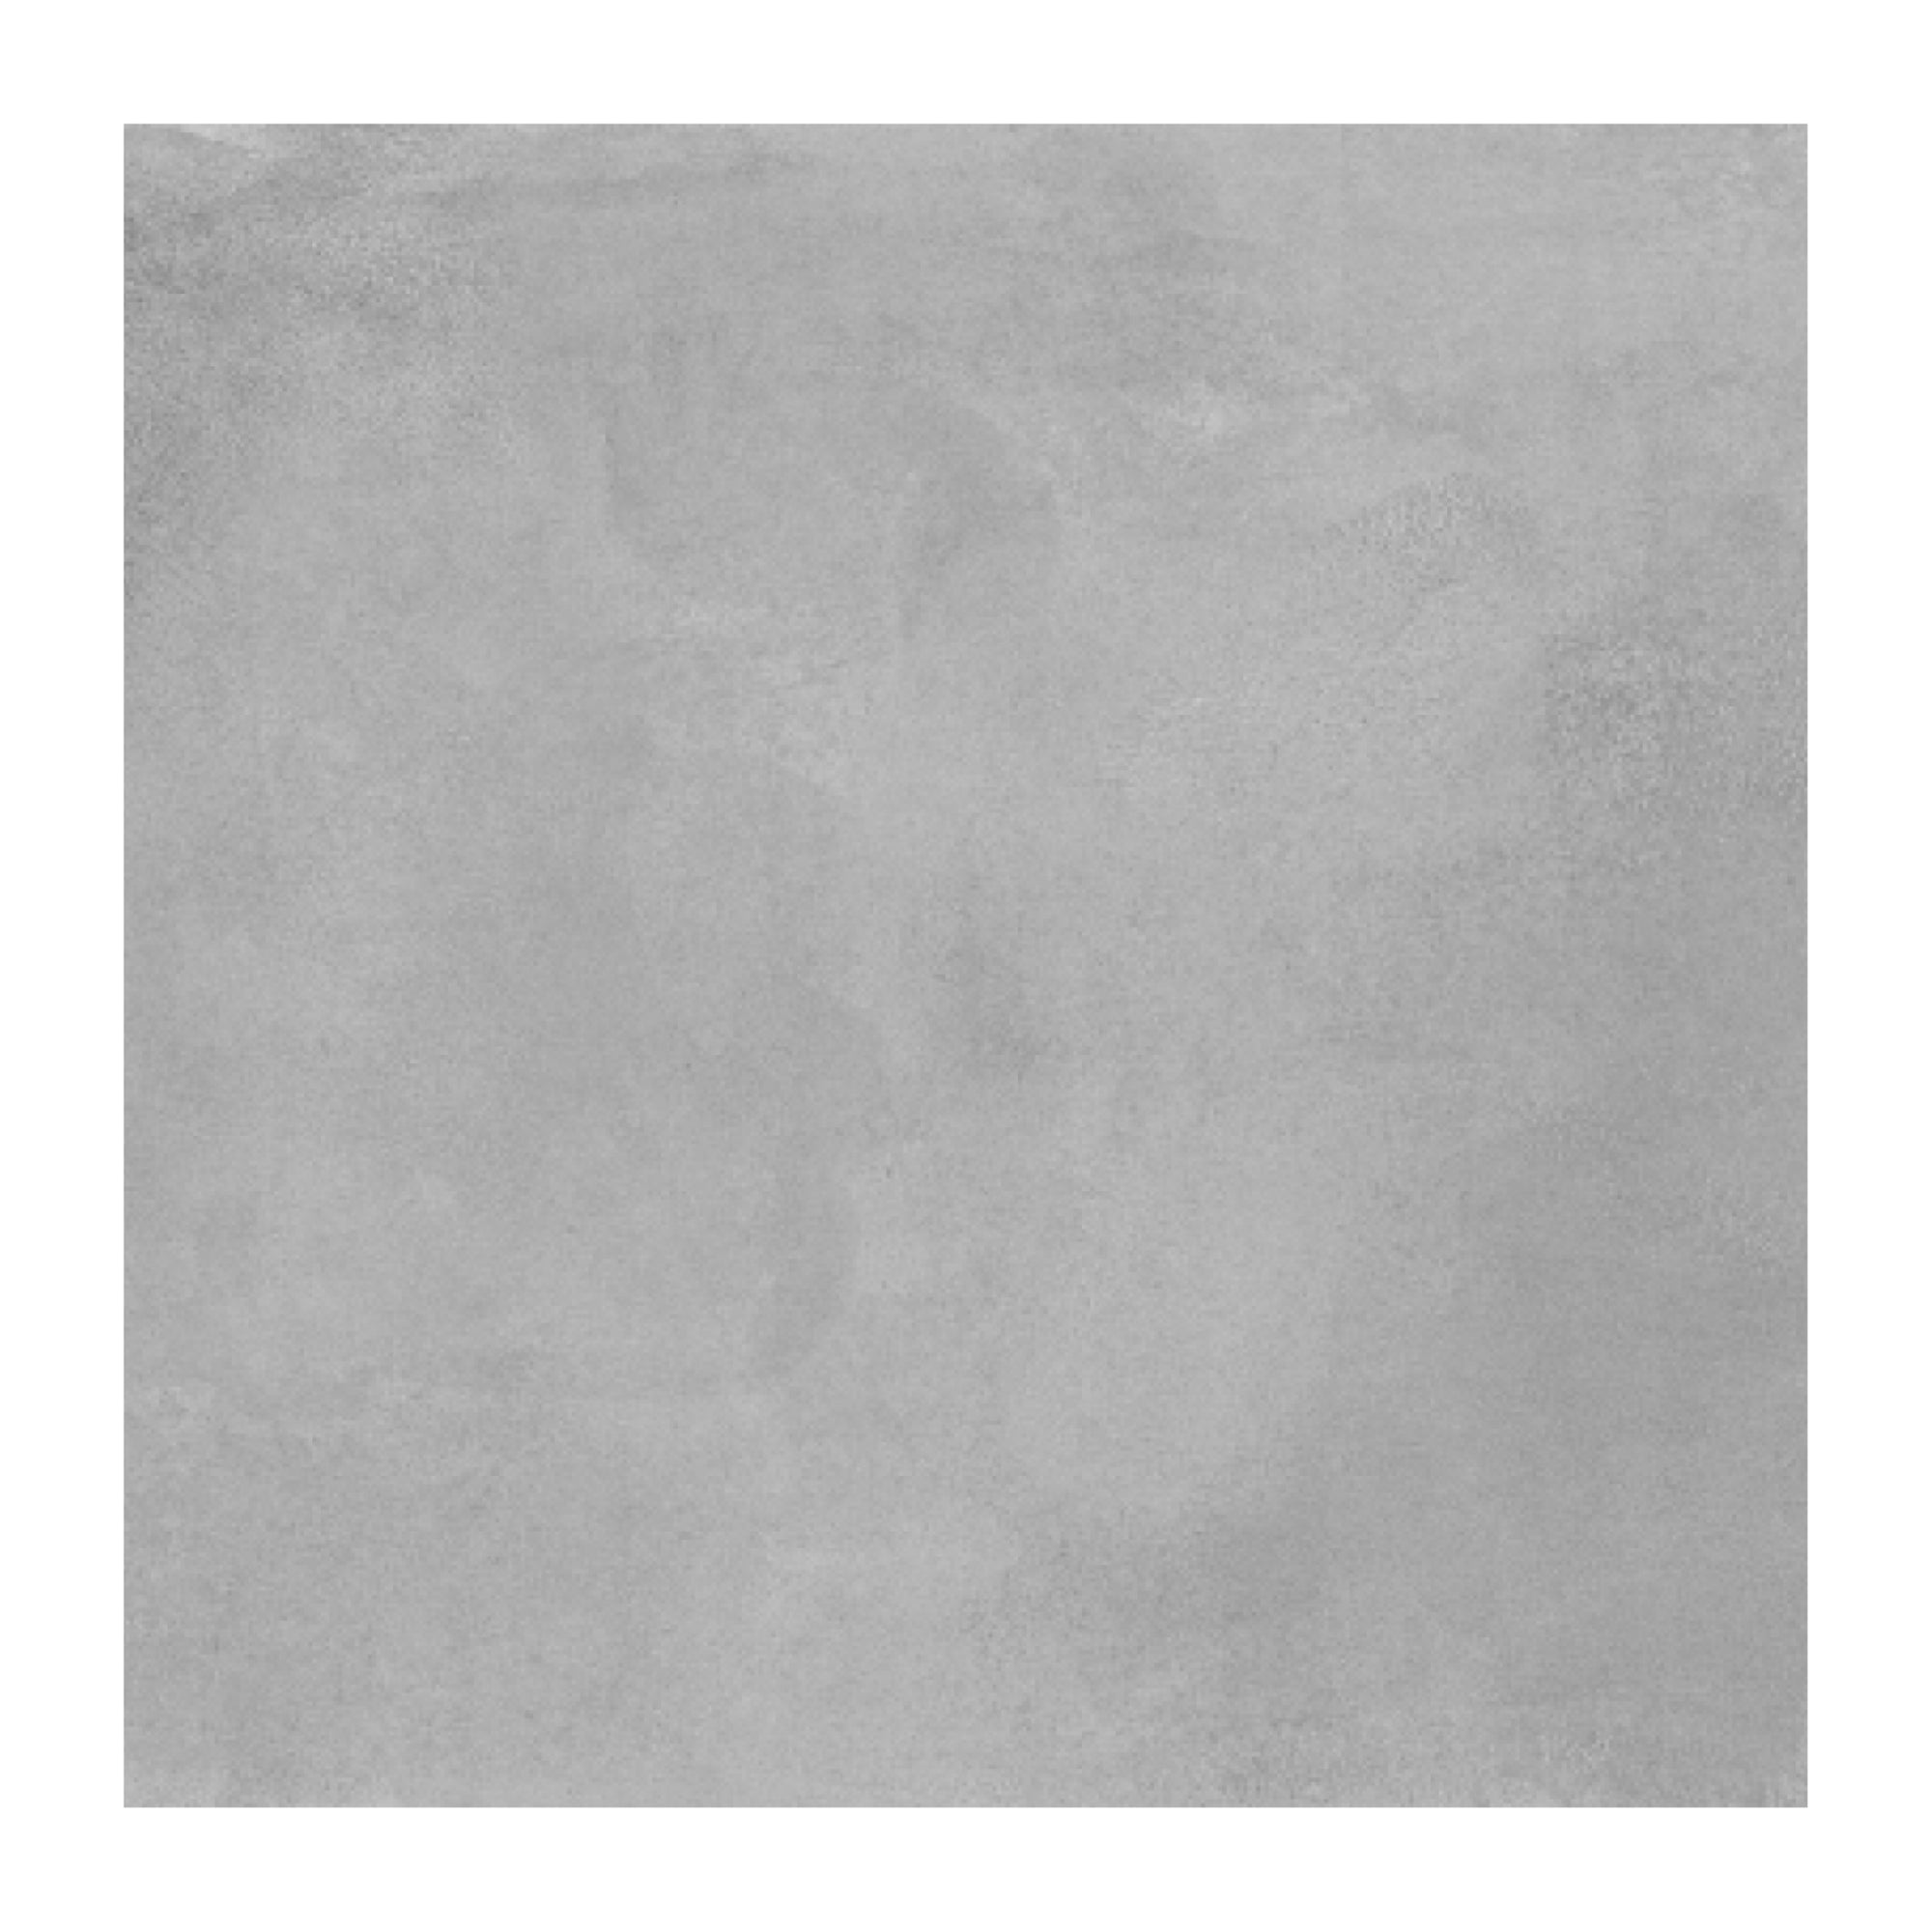 Gres - Cementare Dark Grey Matt 60x60 Rectificado